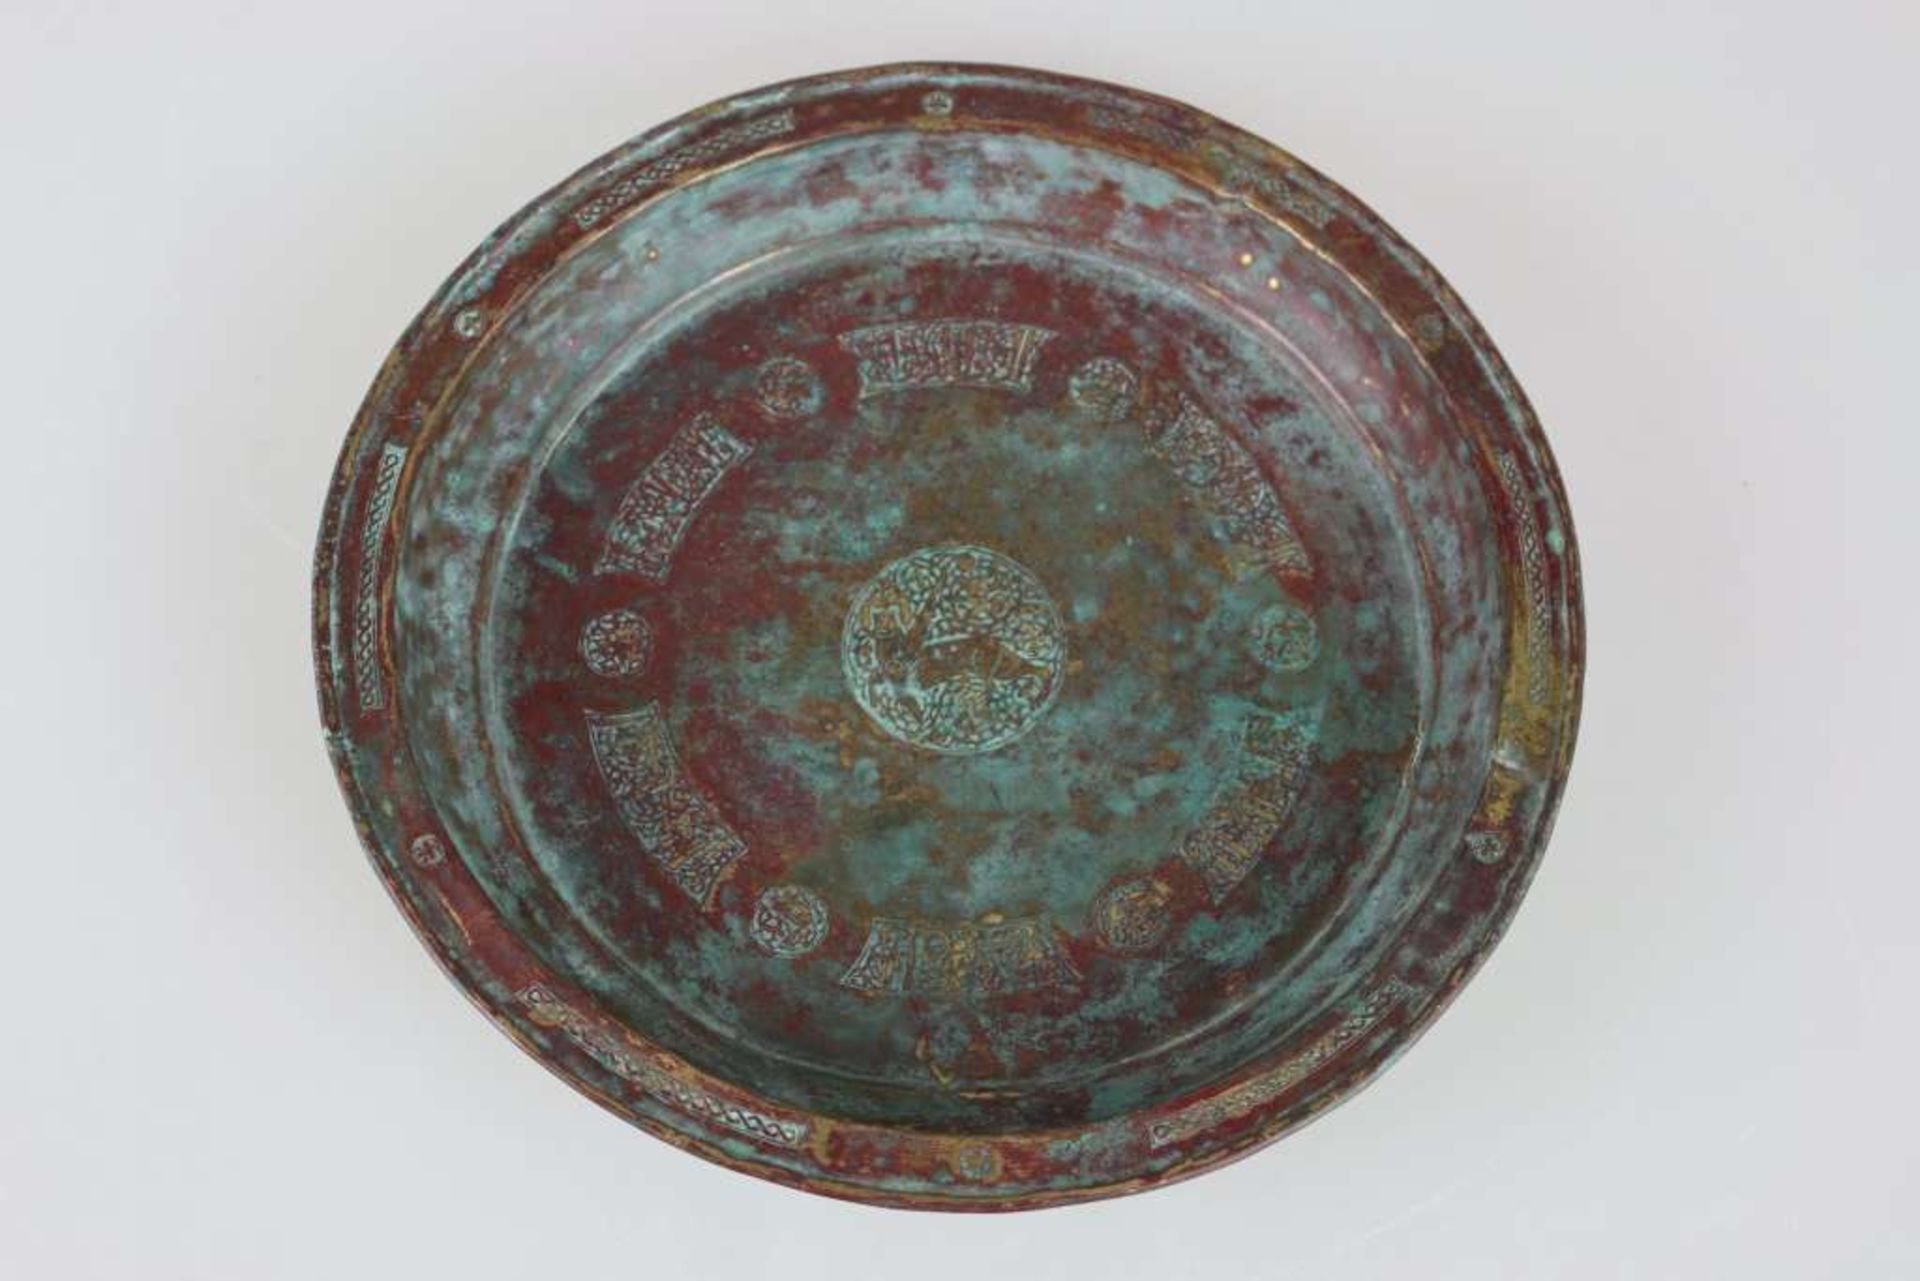 Persien um 1400, tiefgemuldeter Teller aus Messing, im Spiegel reichhaltig verziert, mit Darstellung